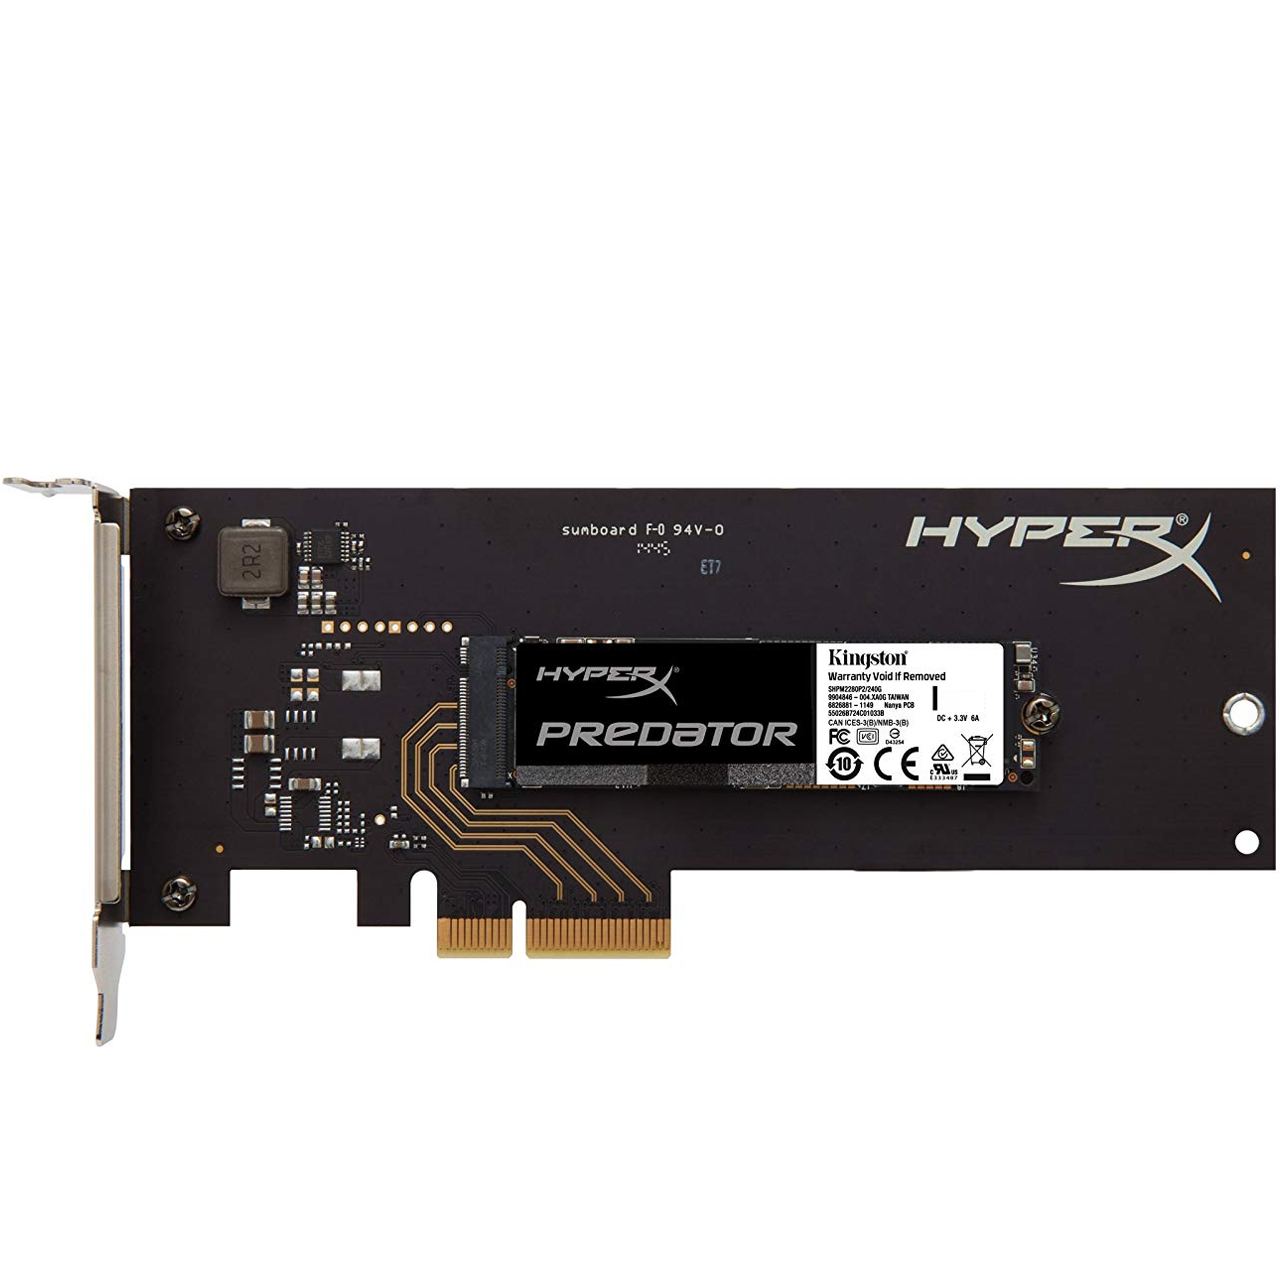 اس اس دی کینگستون مدل HyperX PREDATOR ظرفیت 480 گیگابایت